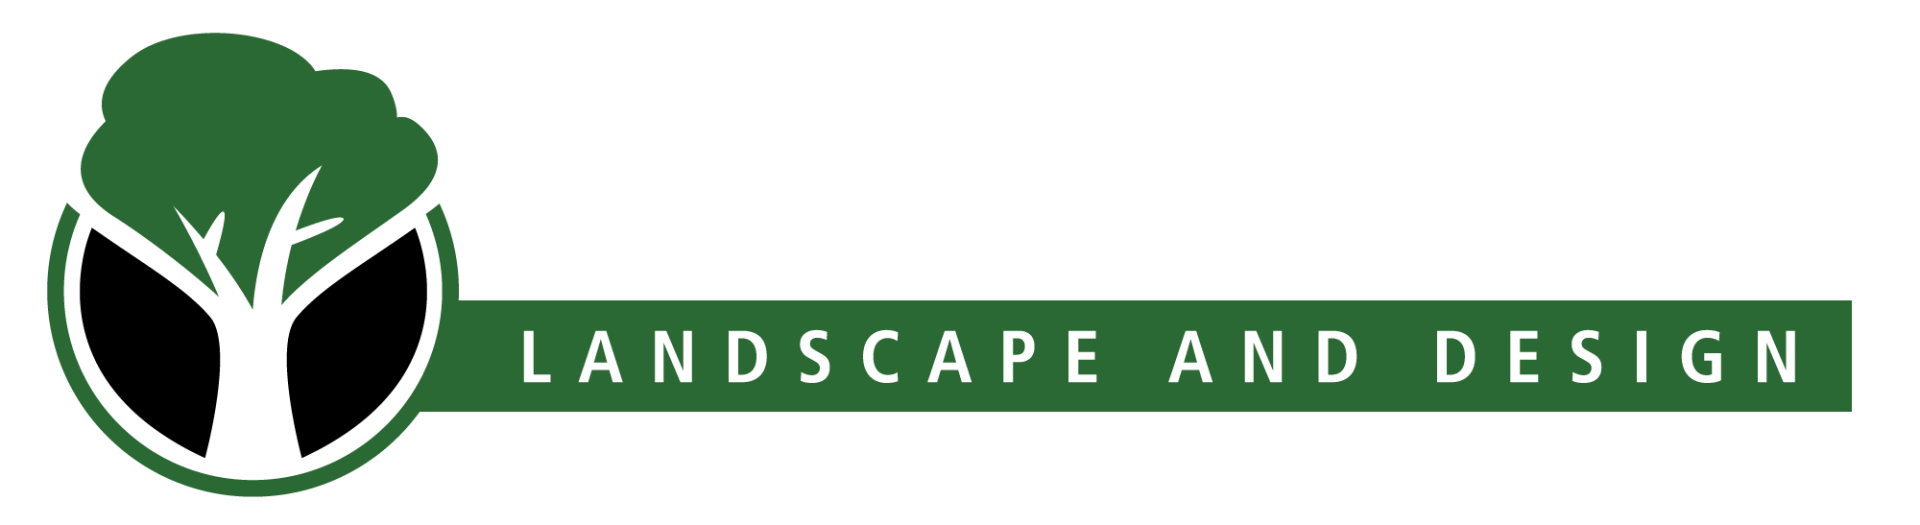 Ethan's Eden Landscape and Design, LLC logo